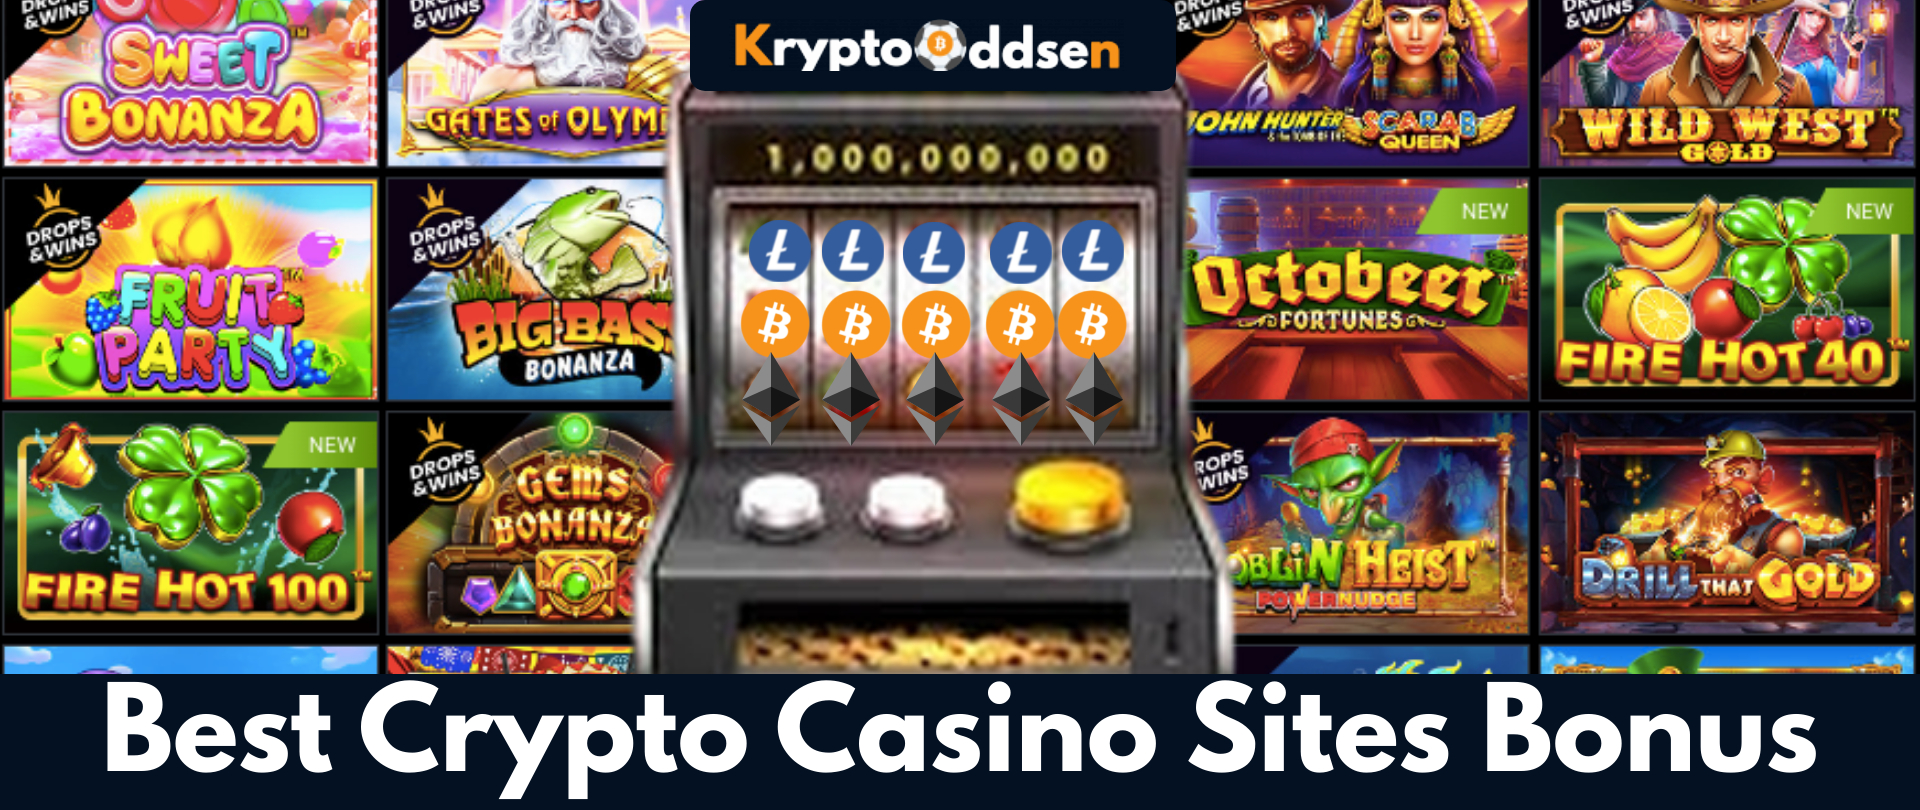 Best New Crypto Casino Sites Bonus 2022